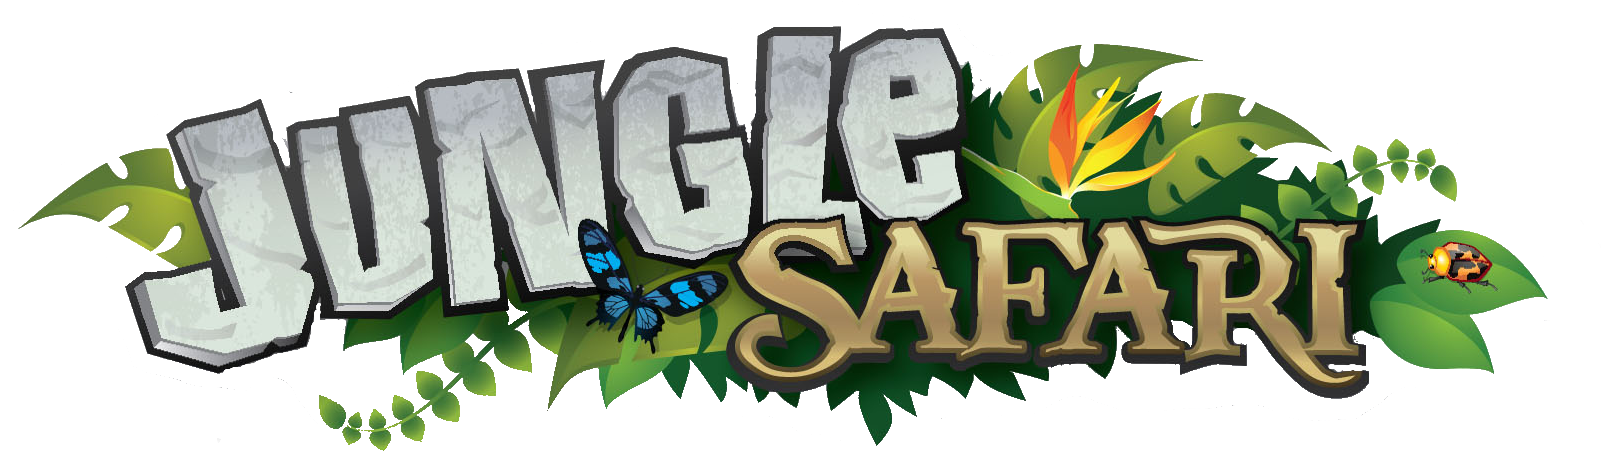 Safari Vbs Cliparts - Jungle Safari - Png Download (1717x599), Png Download